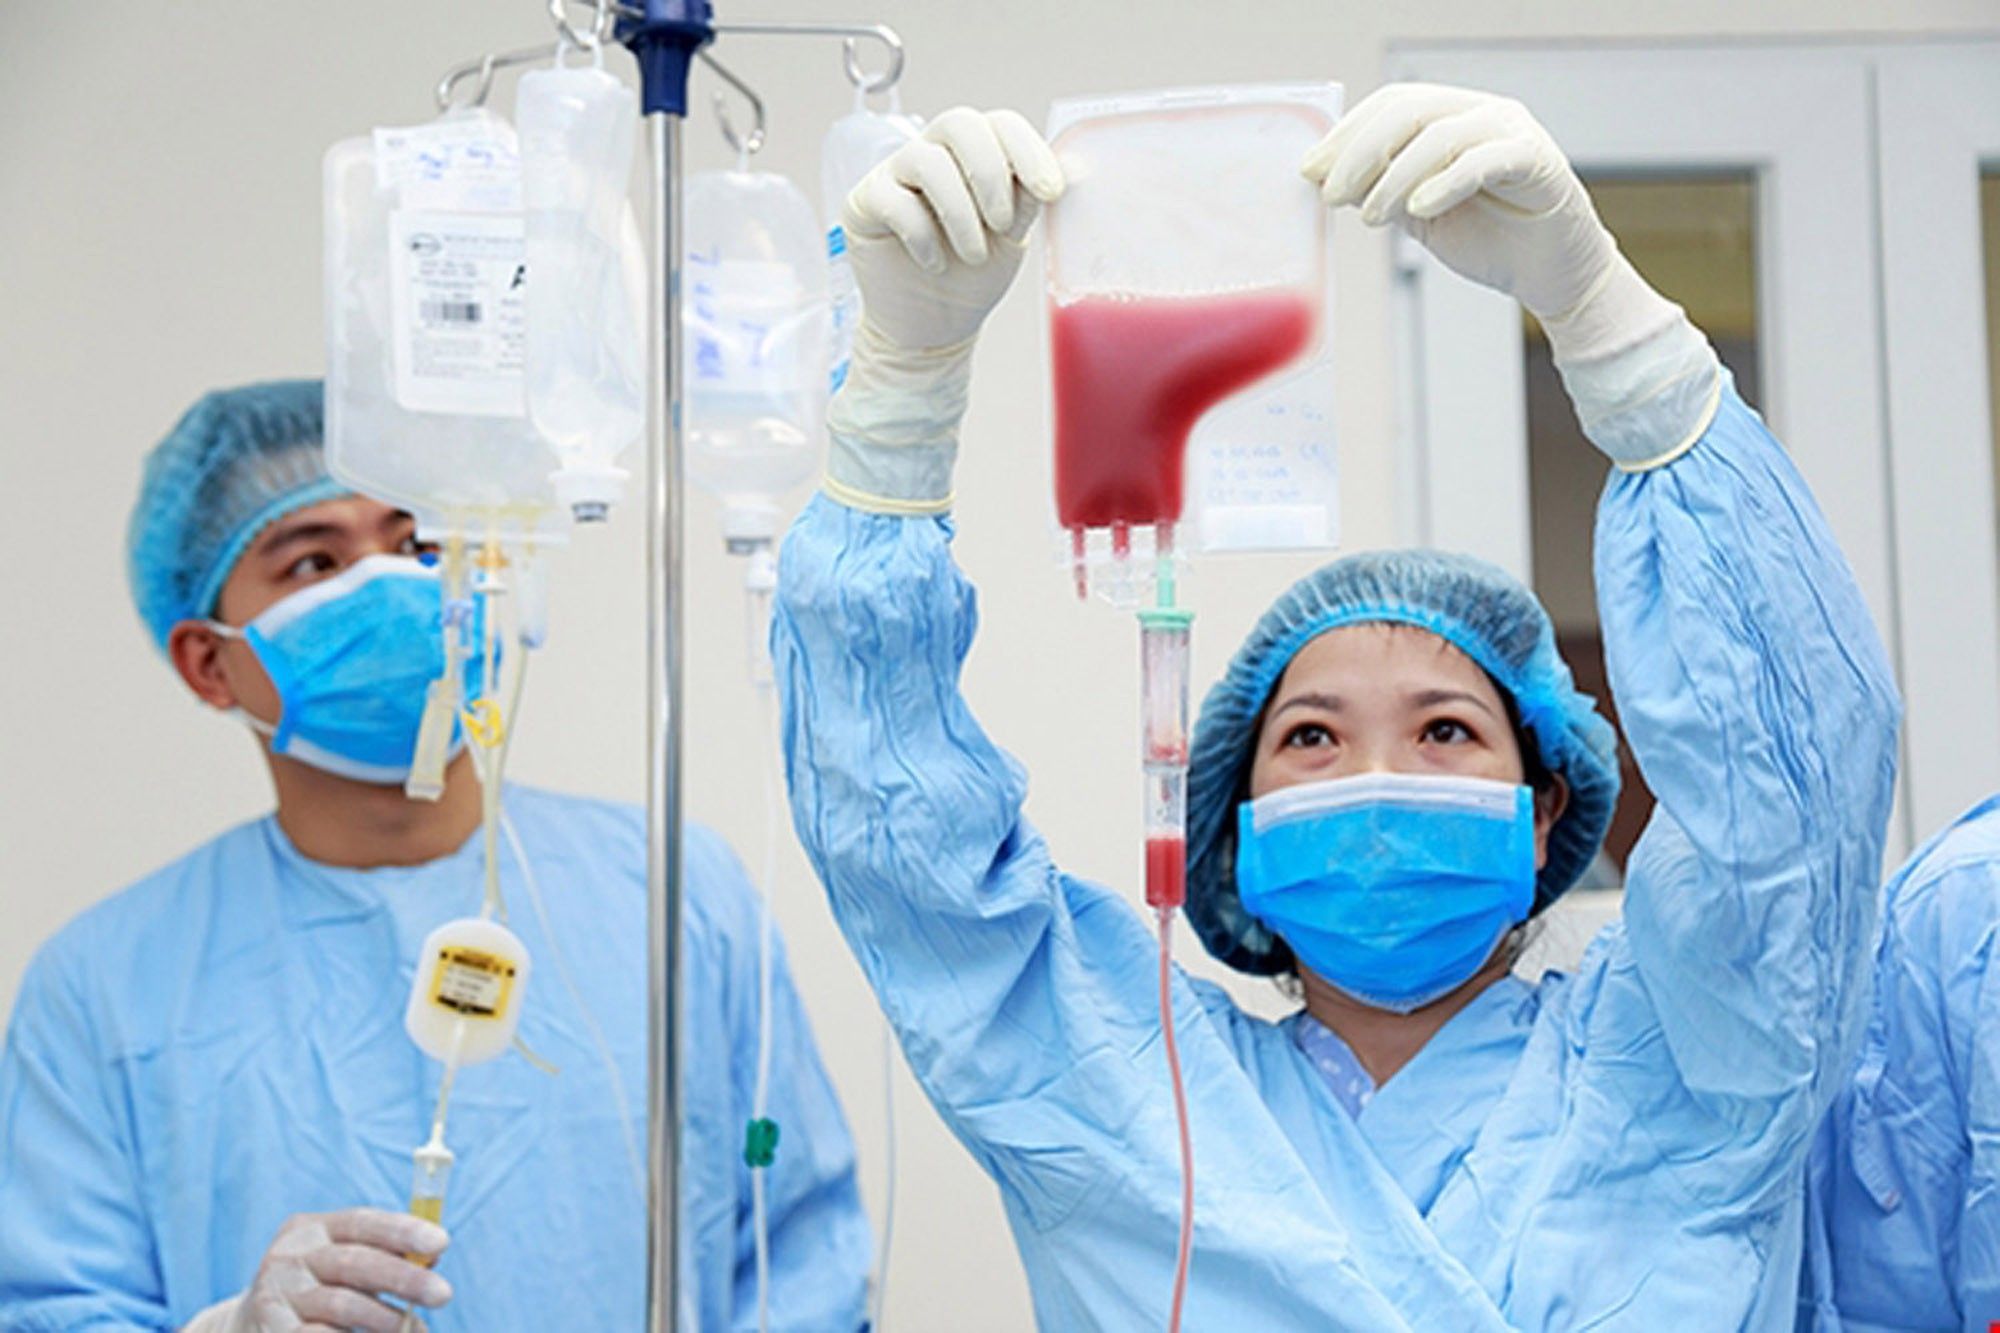 Ghép tế bào gốc chữa bệnh lý huyết học ác tính - Bệnh viện Bạch Mai